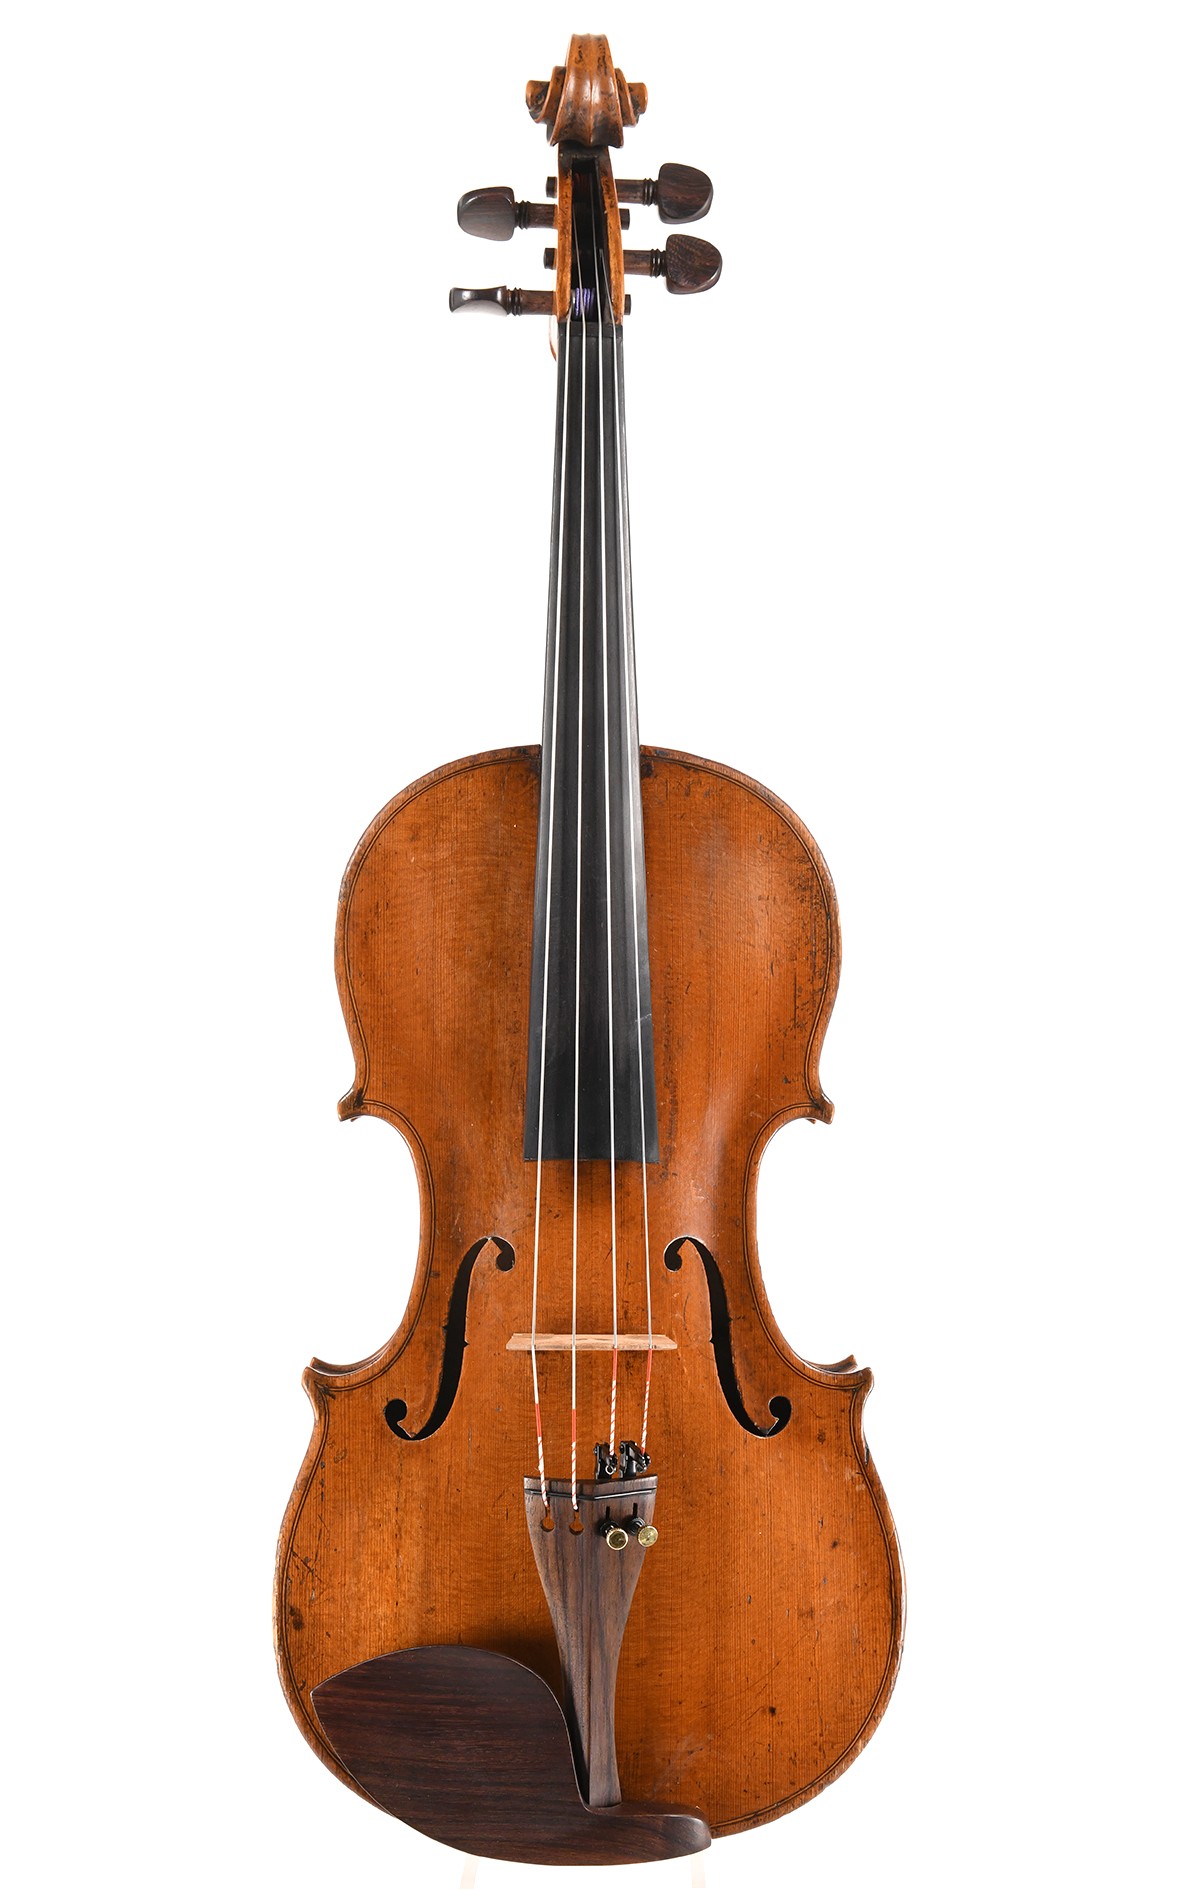 Small antique viola around 1800, Markneukirchen (37,8 cm)